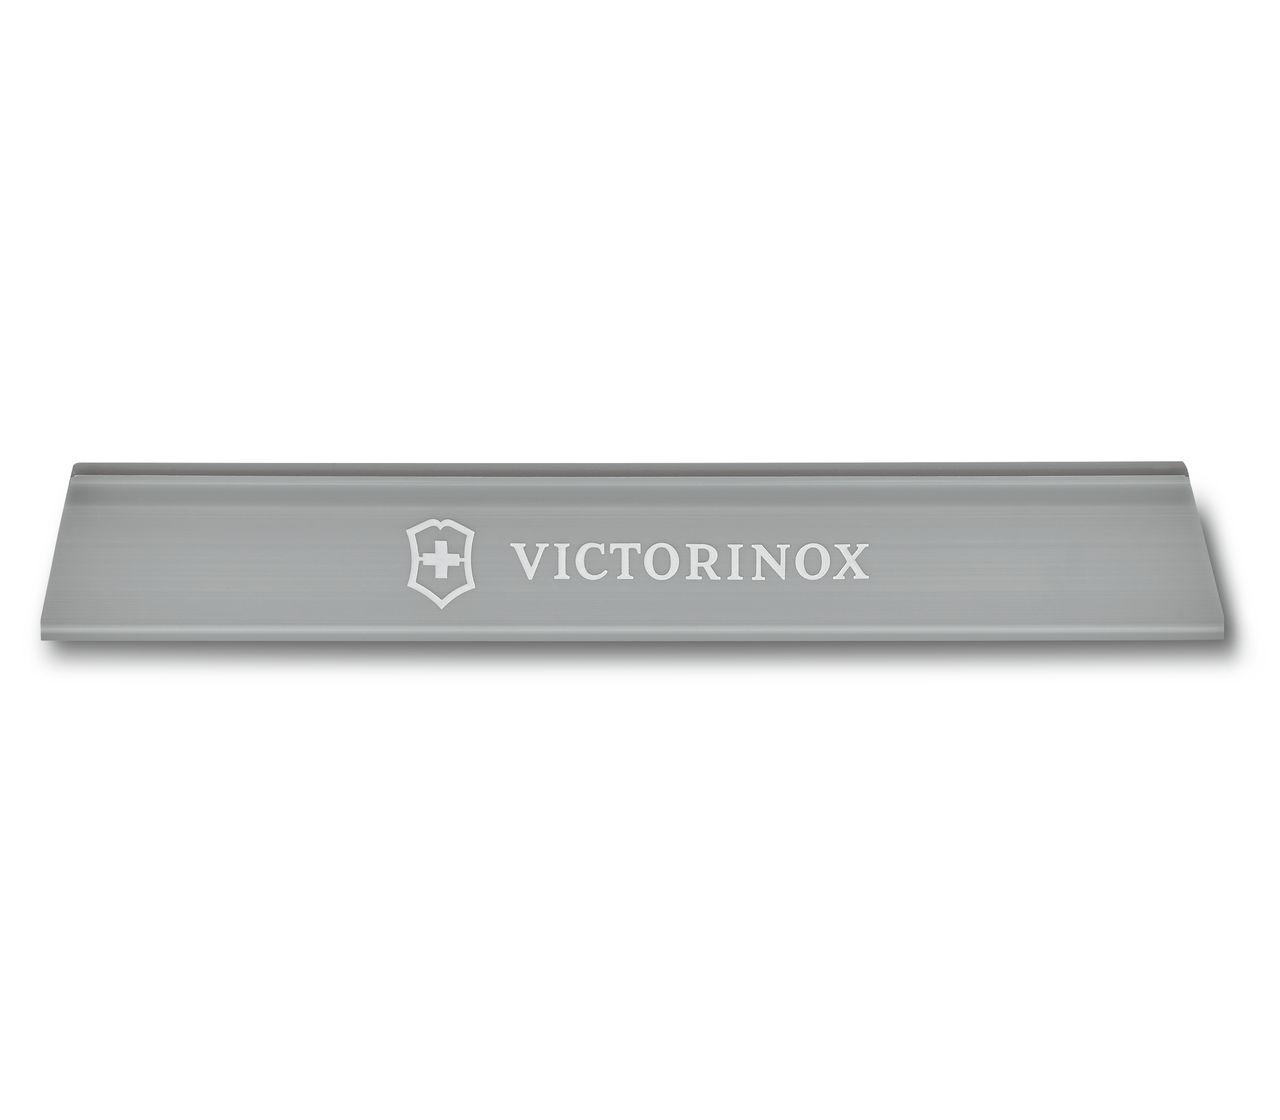 Victorinox - Pocket Knife Sharpener